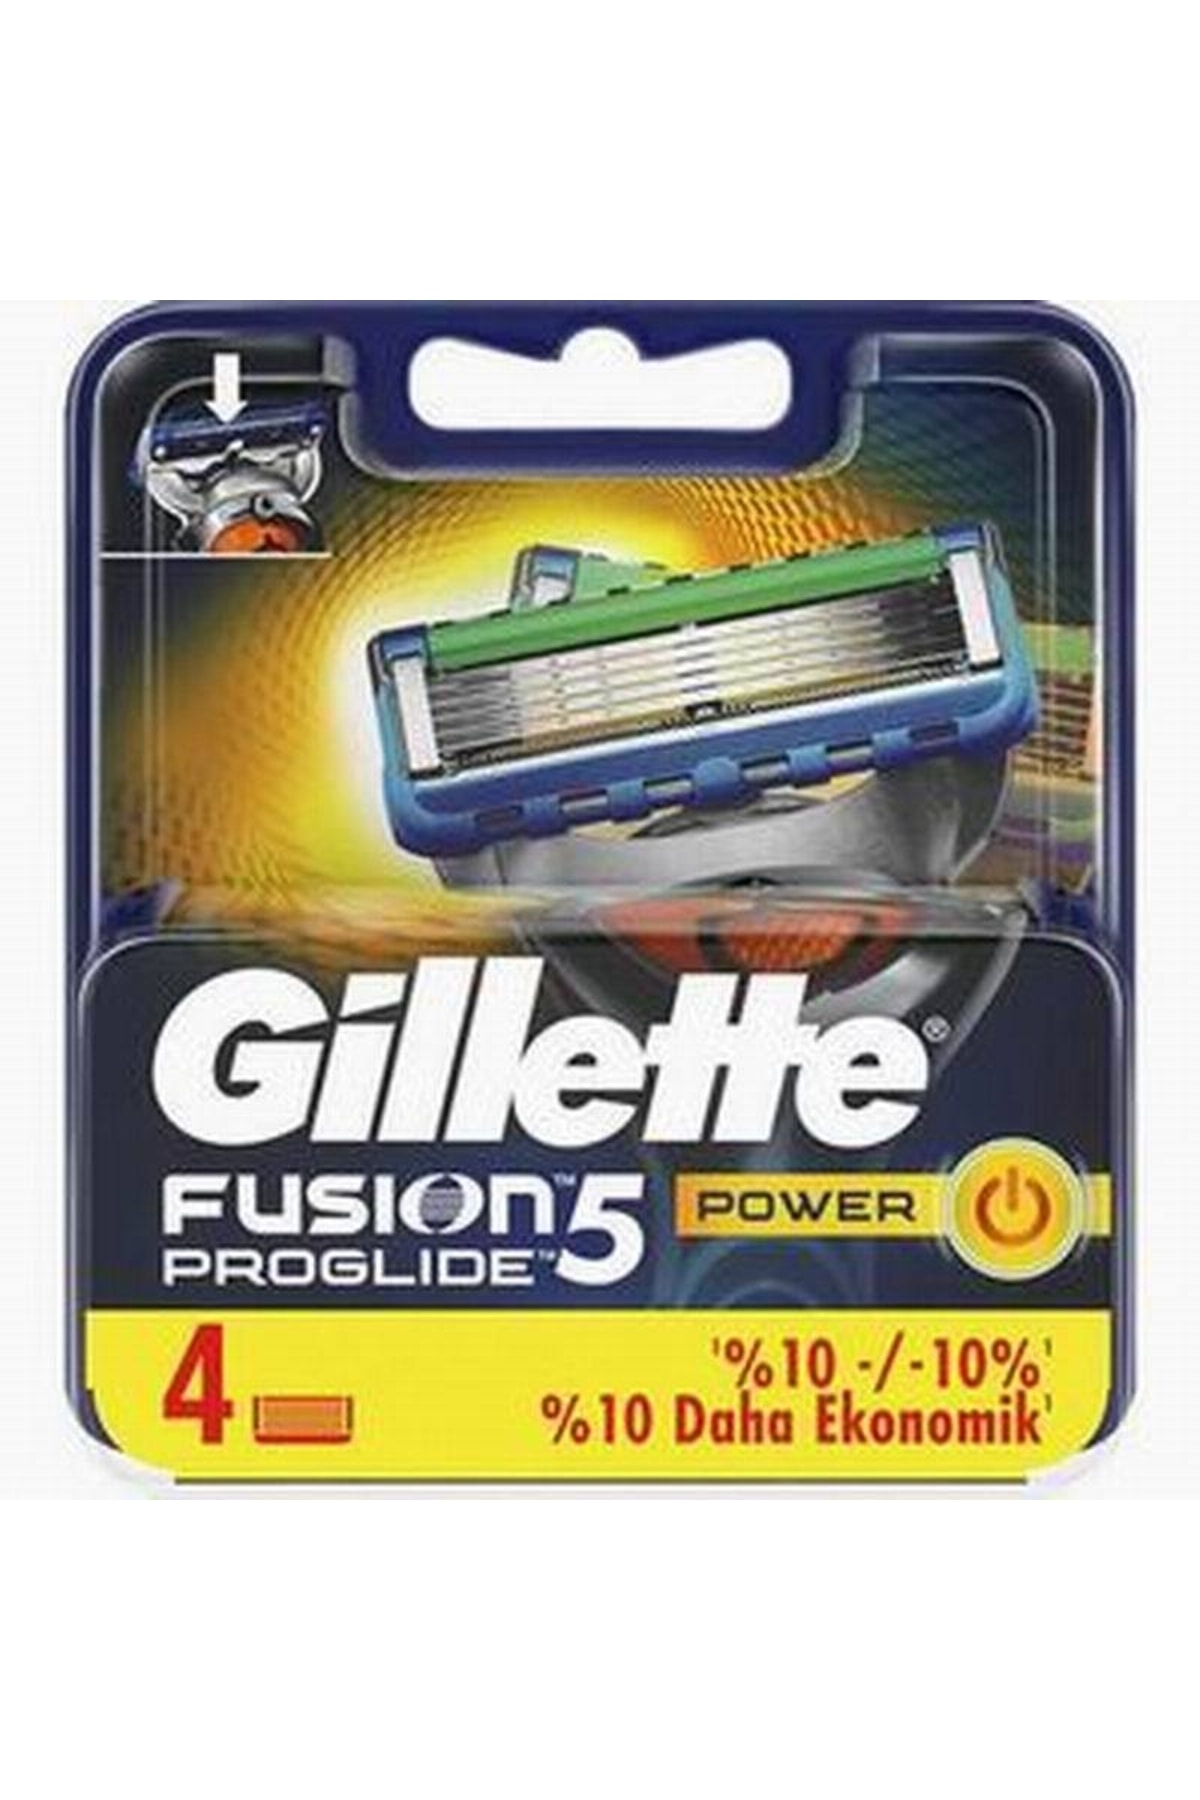 Gillette Fusion 5 Proglide Power Yedek Tıraş Bıçağı 4'lü (ALMANYA ÜRETİM)